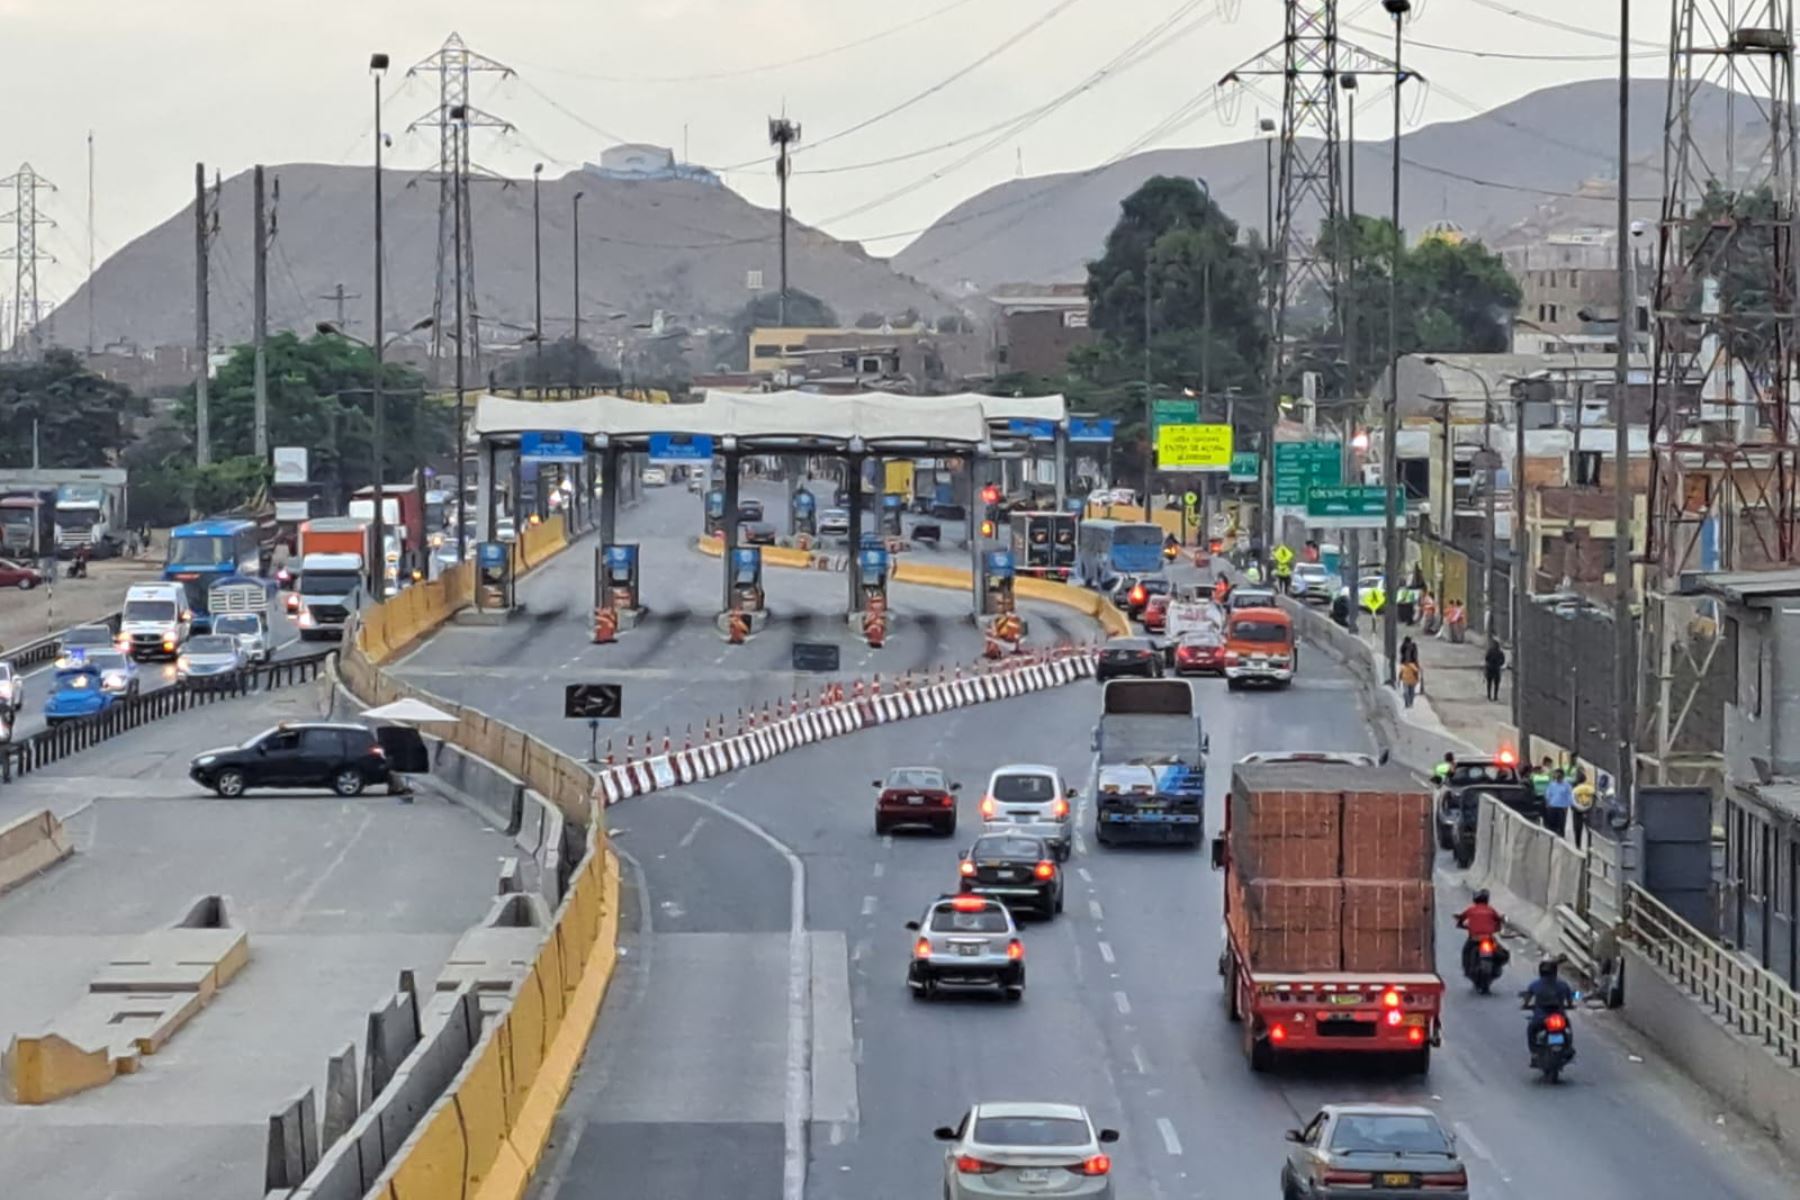 Rutas de Lima deberá cumplir la decisión hasta que se tomen medidas para cesar el "acto lesivo vulneratorio de la libertad de tránsito" o hasta que la justicia penal emita un pronunciamiento, con calidad de firme, indica el TC. ANDINA/Eddy Ramos